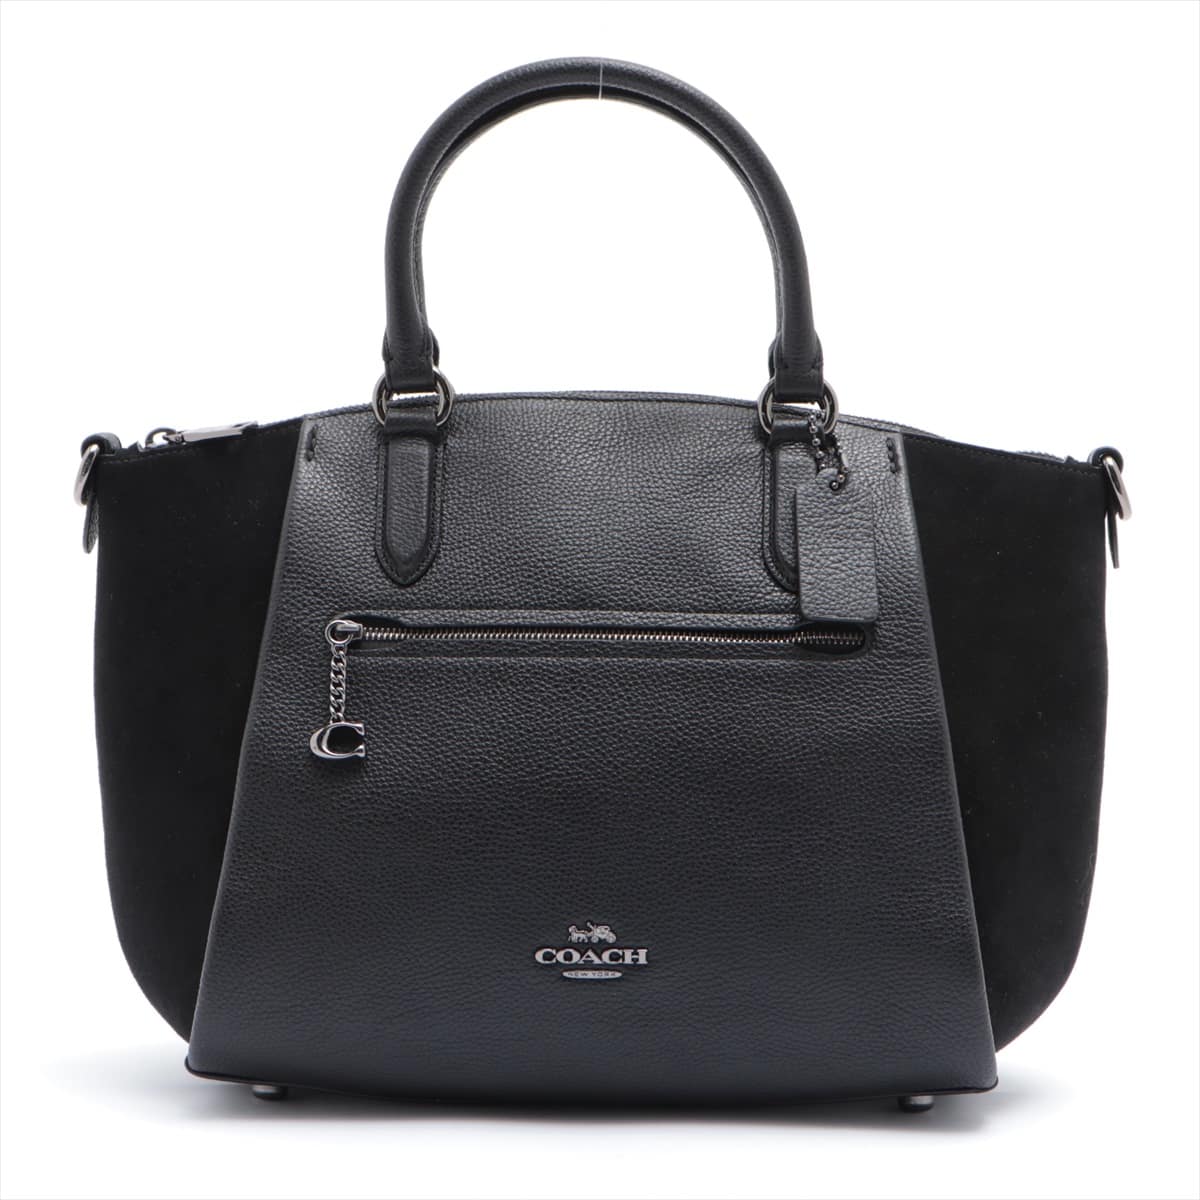 COACH Leather & Suede 2way handbag Black